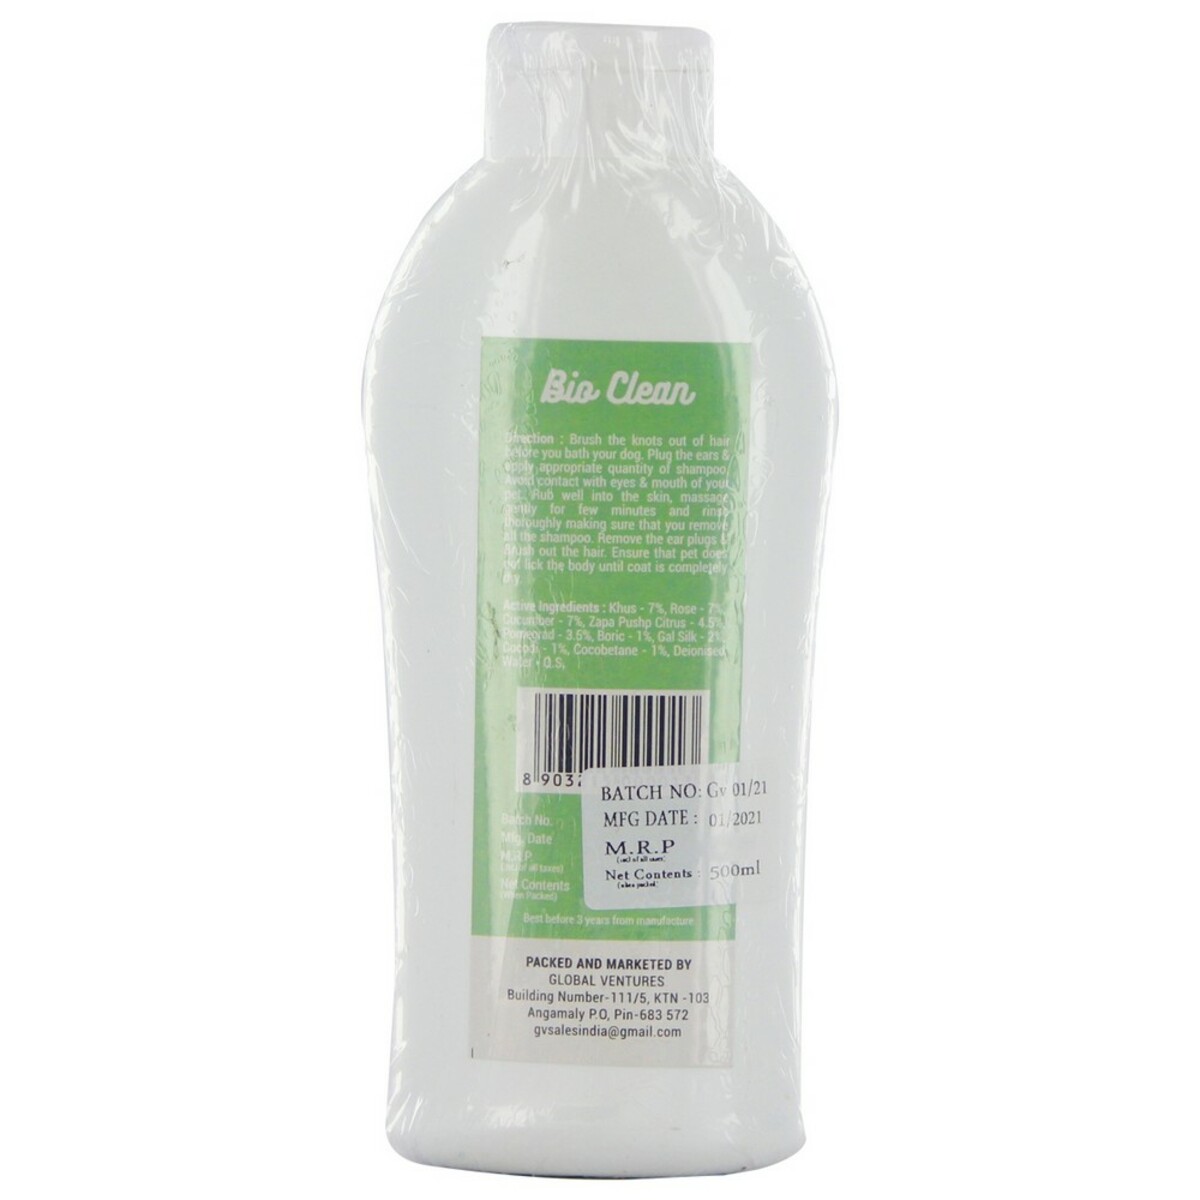 Bio Clean Pet Shampoo 500ml